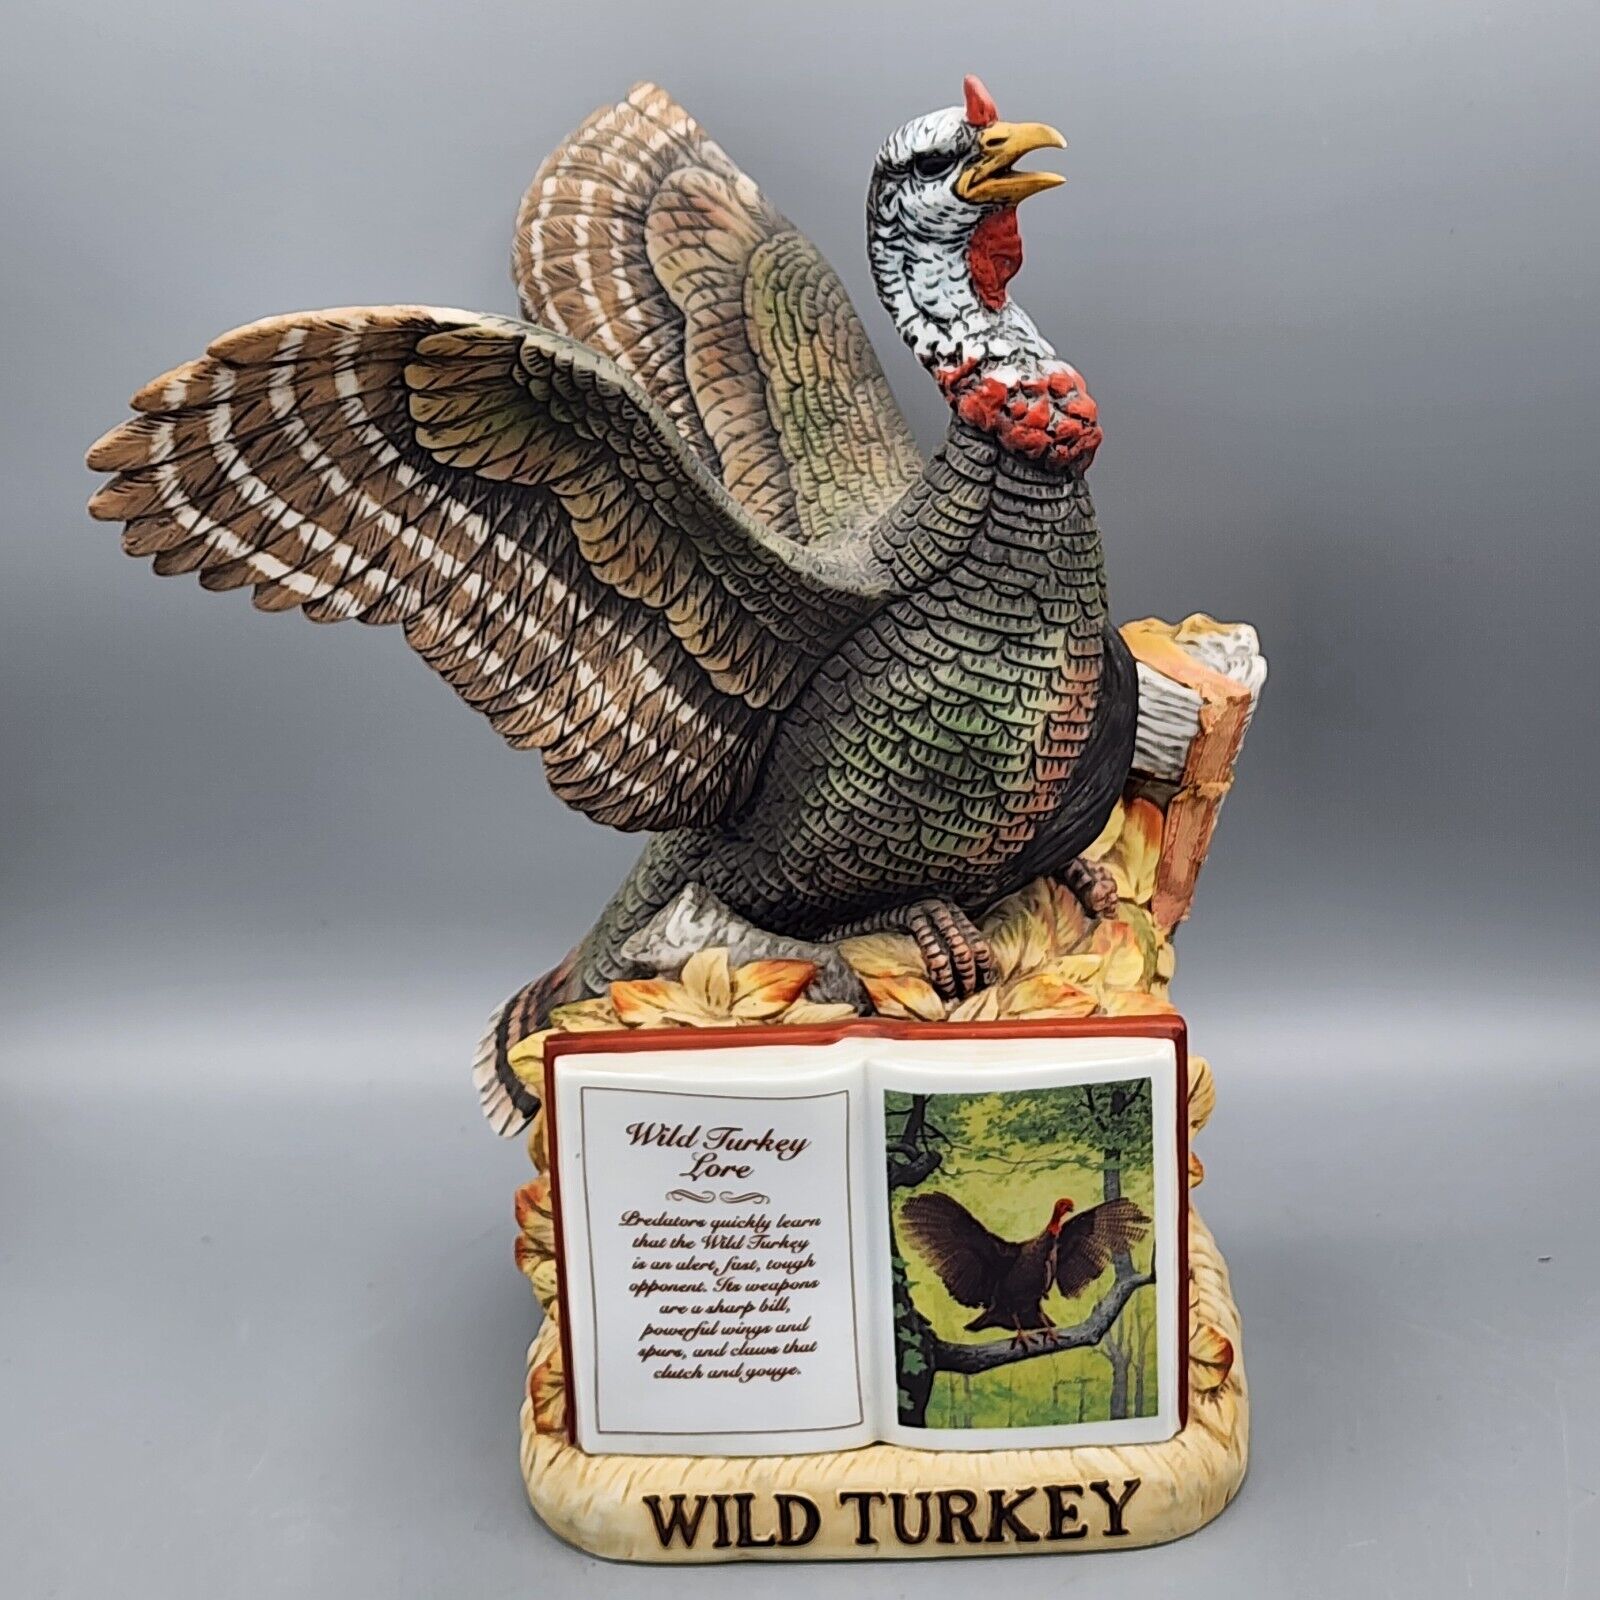 Austin Nichols Wild Turkey Series 2, No. 4 LE Porcelain Empty Decanter 1982